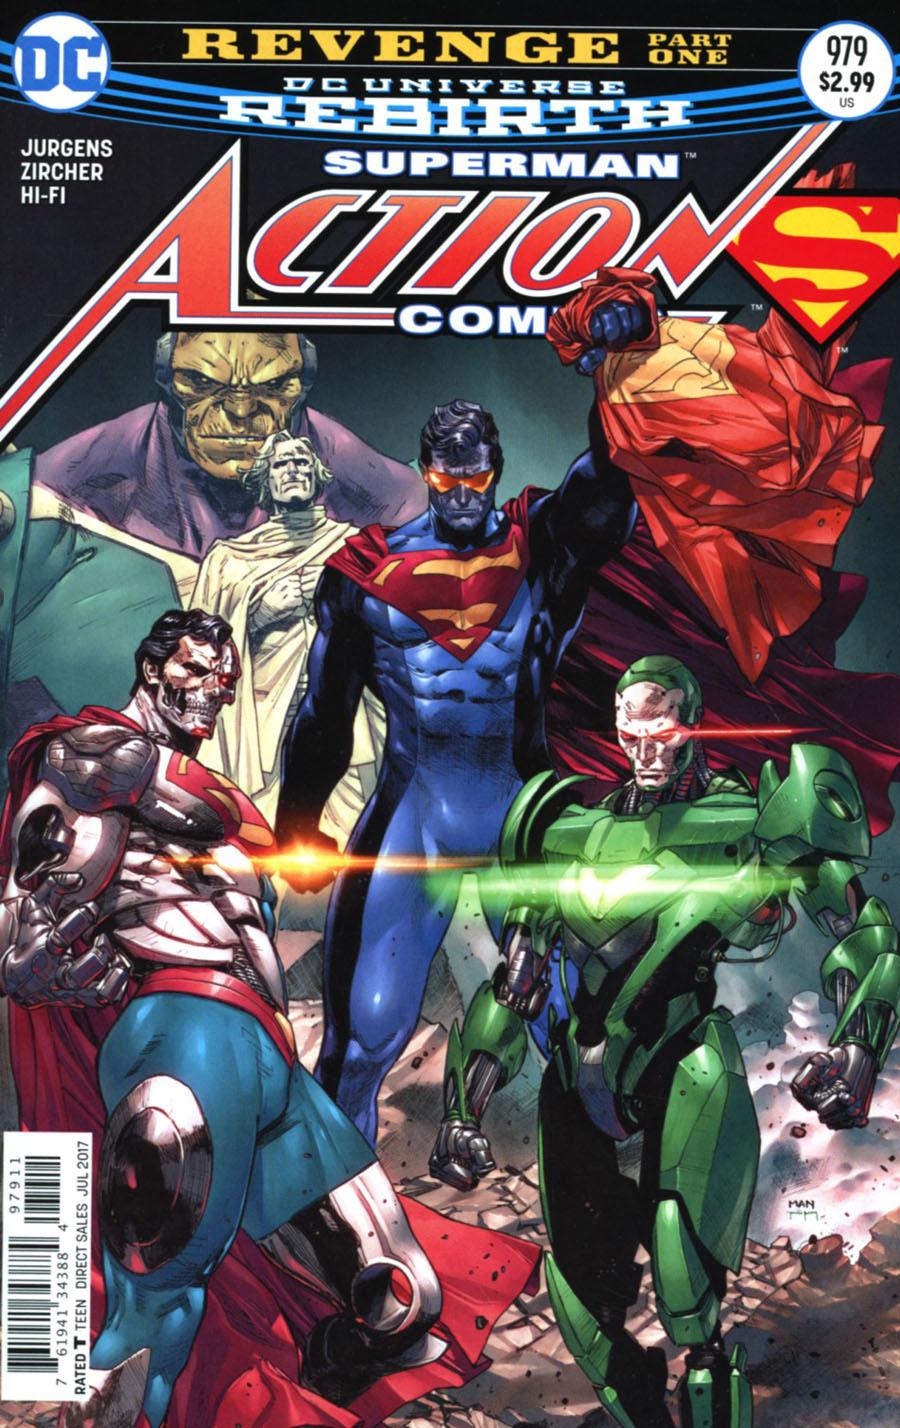 Action Comics Vol. 2 #979